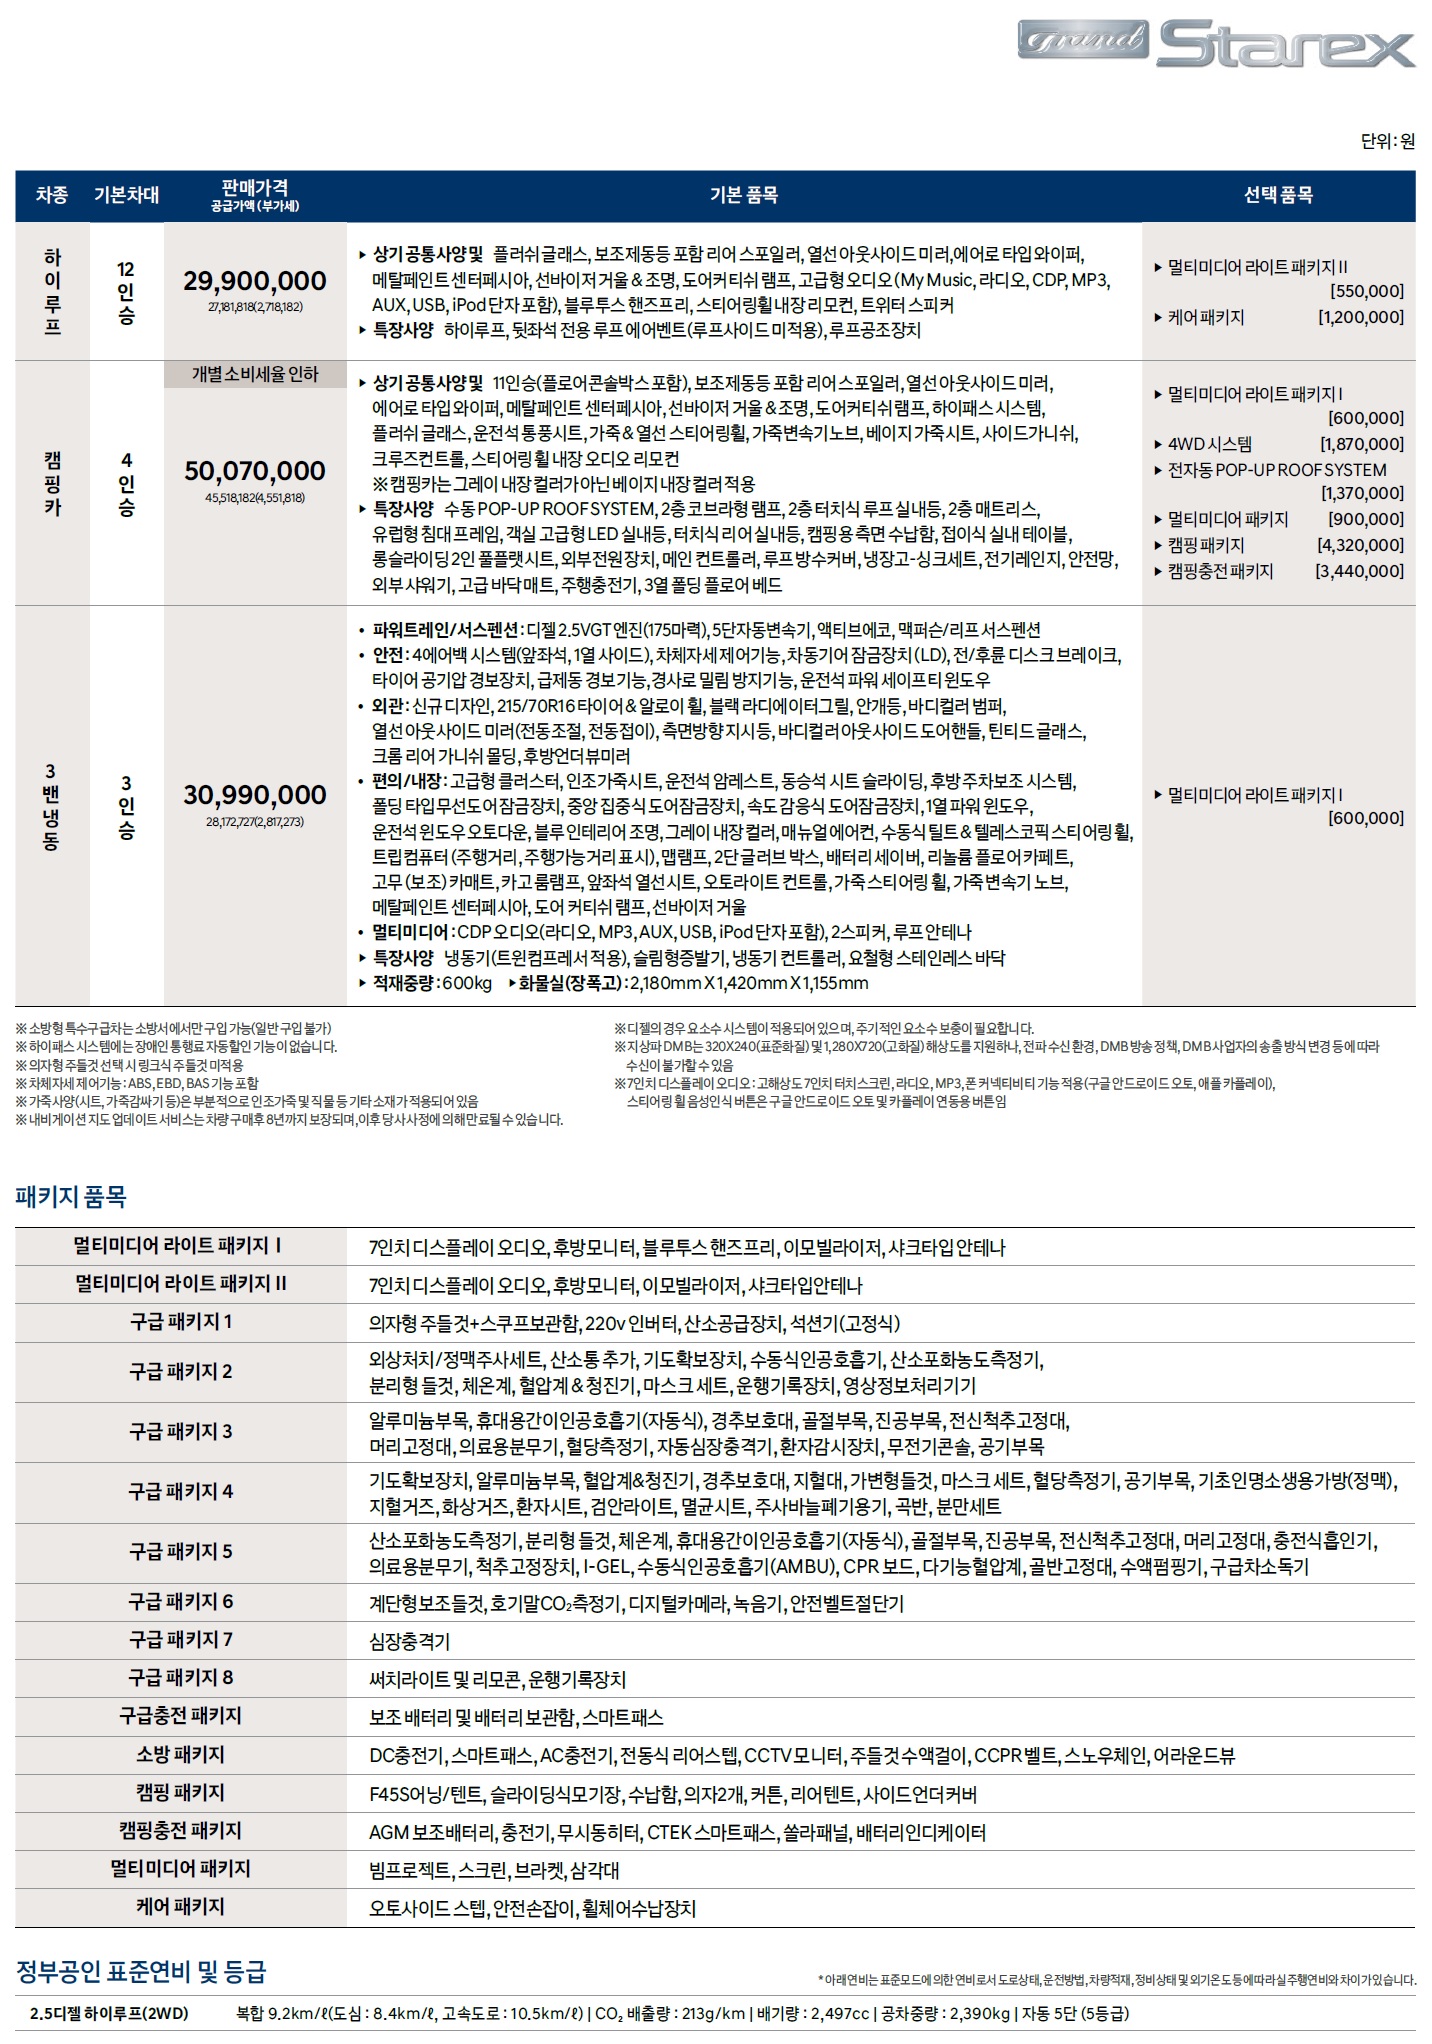 그랜드스타렉스 특장차 가격표 - 2020년형 (2019년 08월) -2.jpg